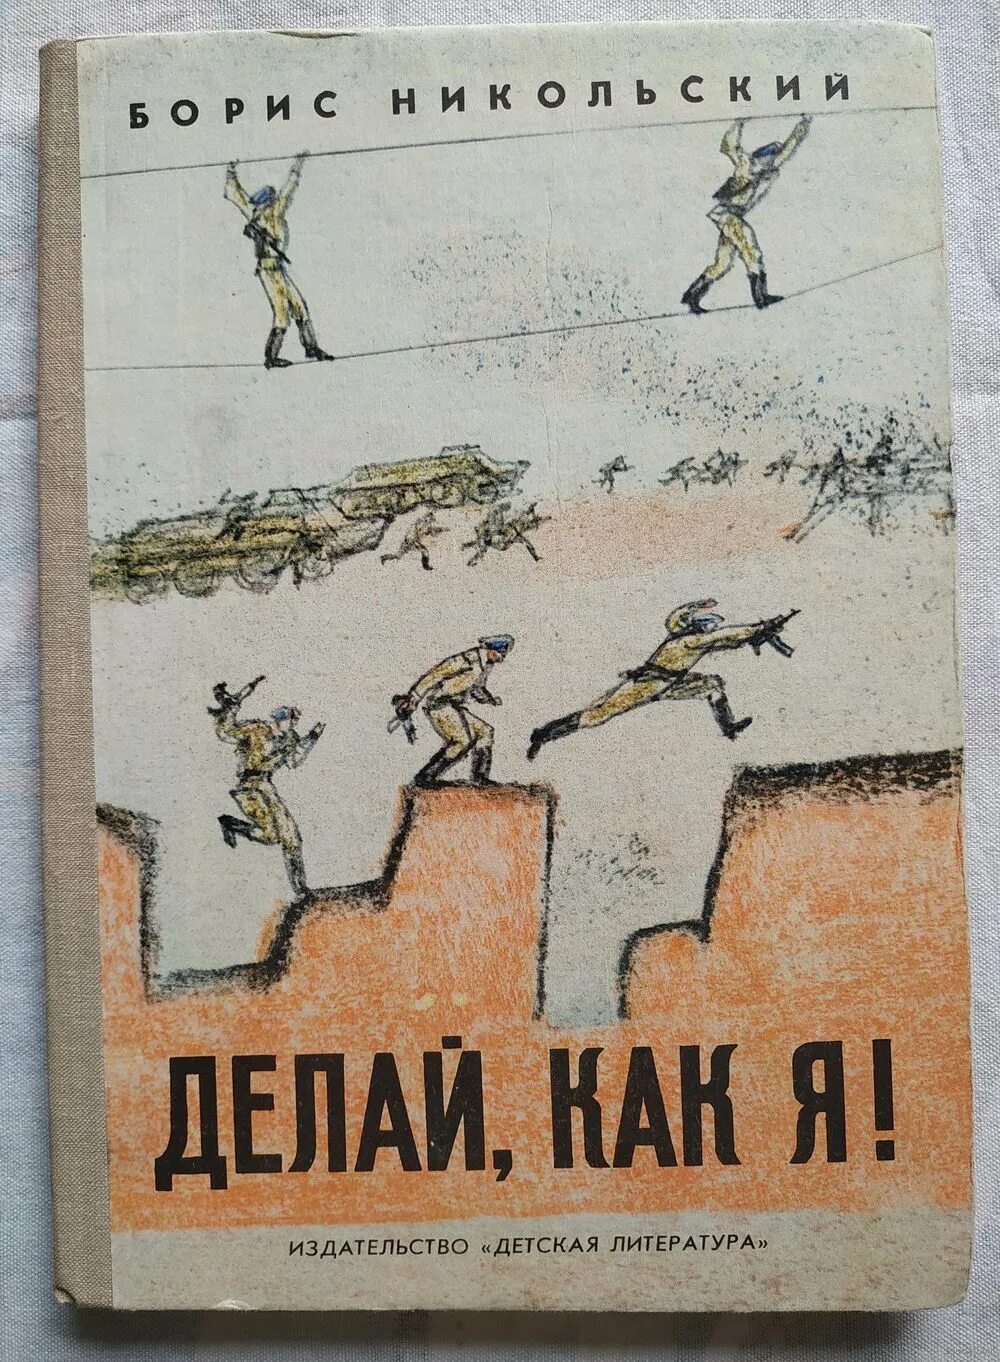 Сделать никольский. Литература 1980.